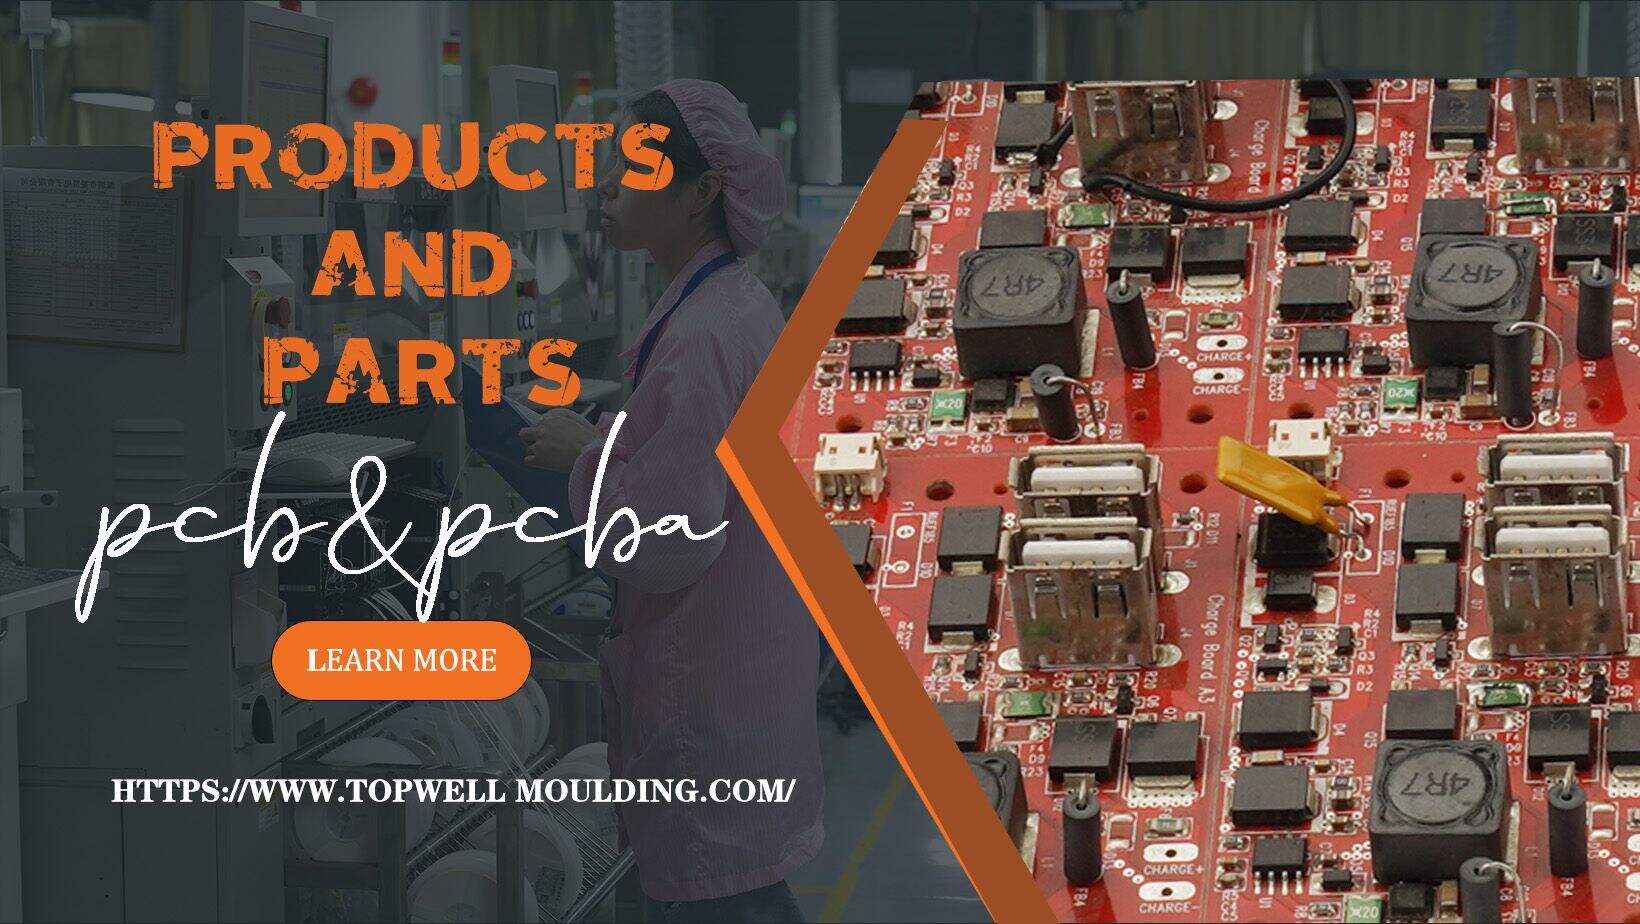 PCB&PCBA;PCB (printed circuit board) design